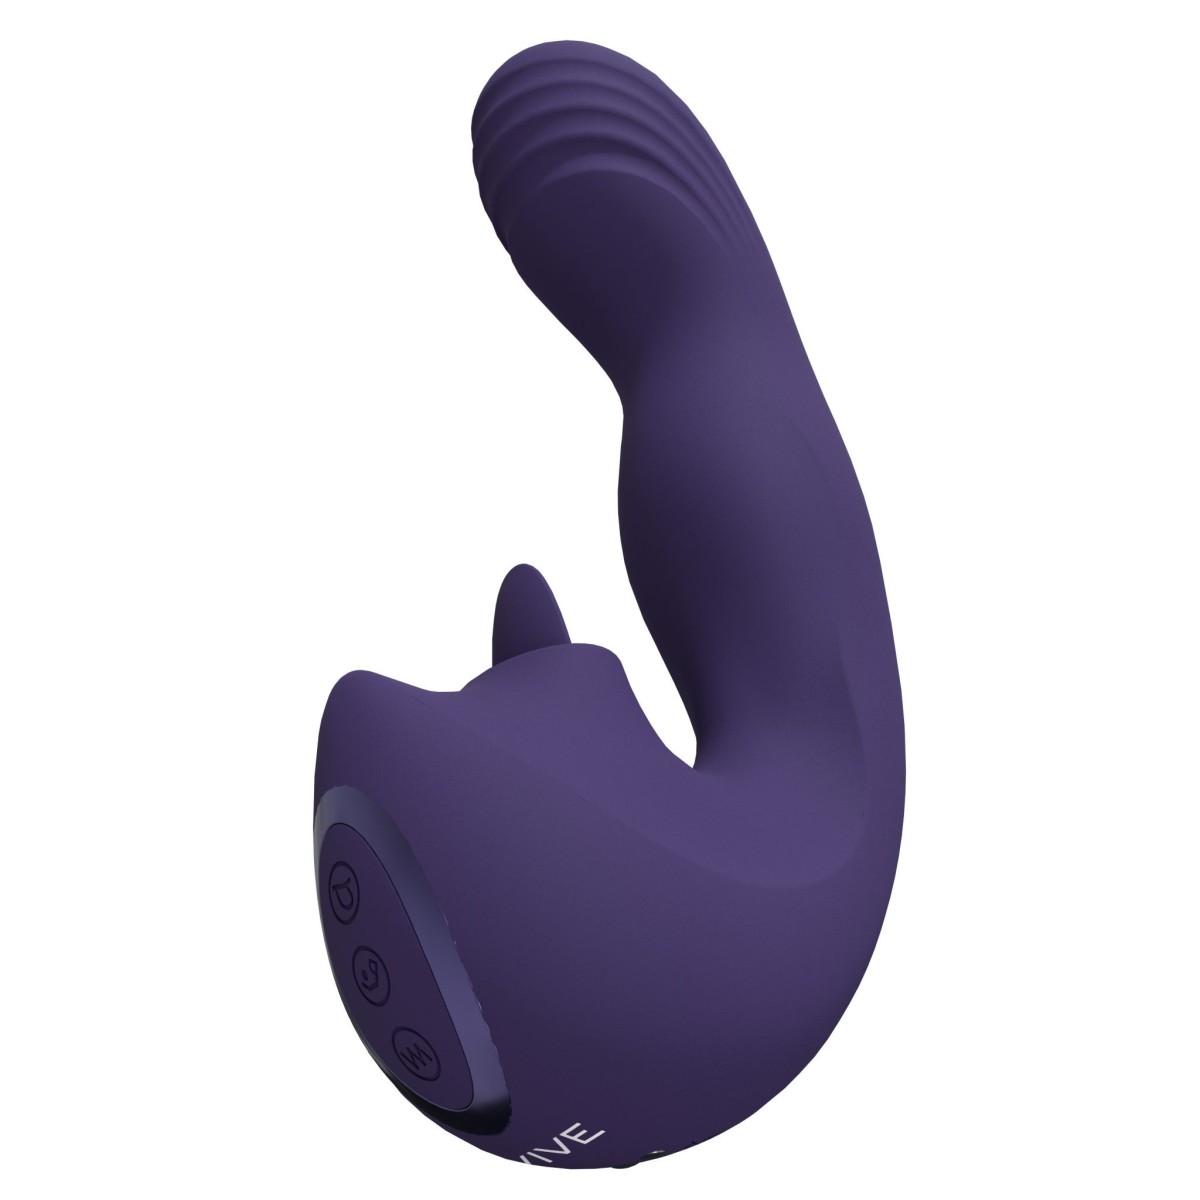 Multifunkční vibrátor Vive Yumi fialový, silikonový vibrátor s pohyblivou hlavou a jazykem 16 x 3,5 cm